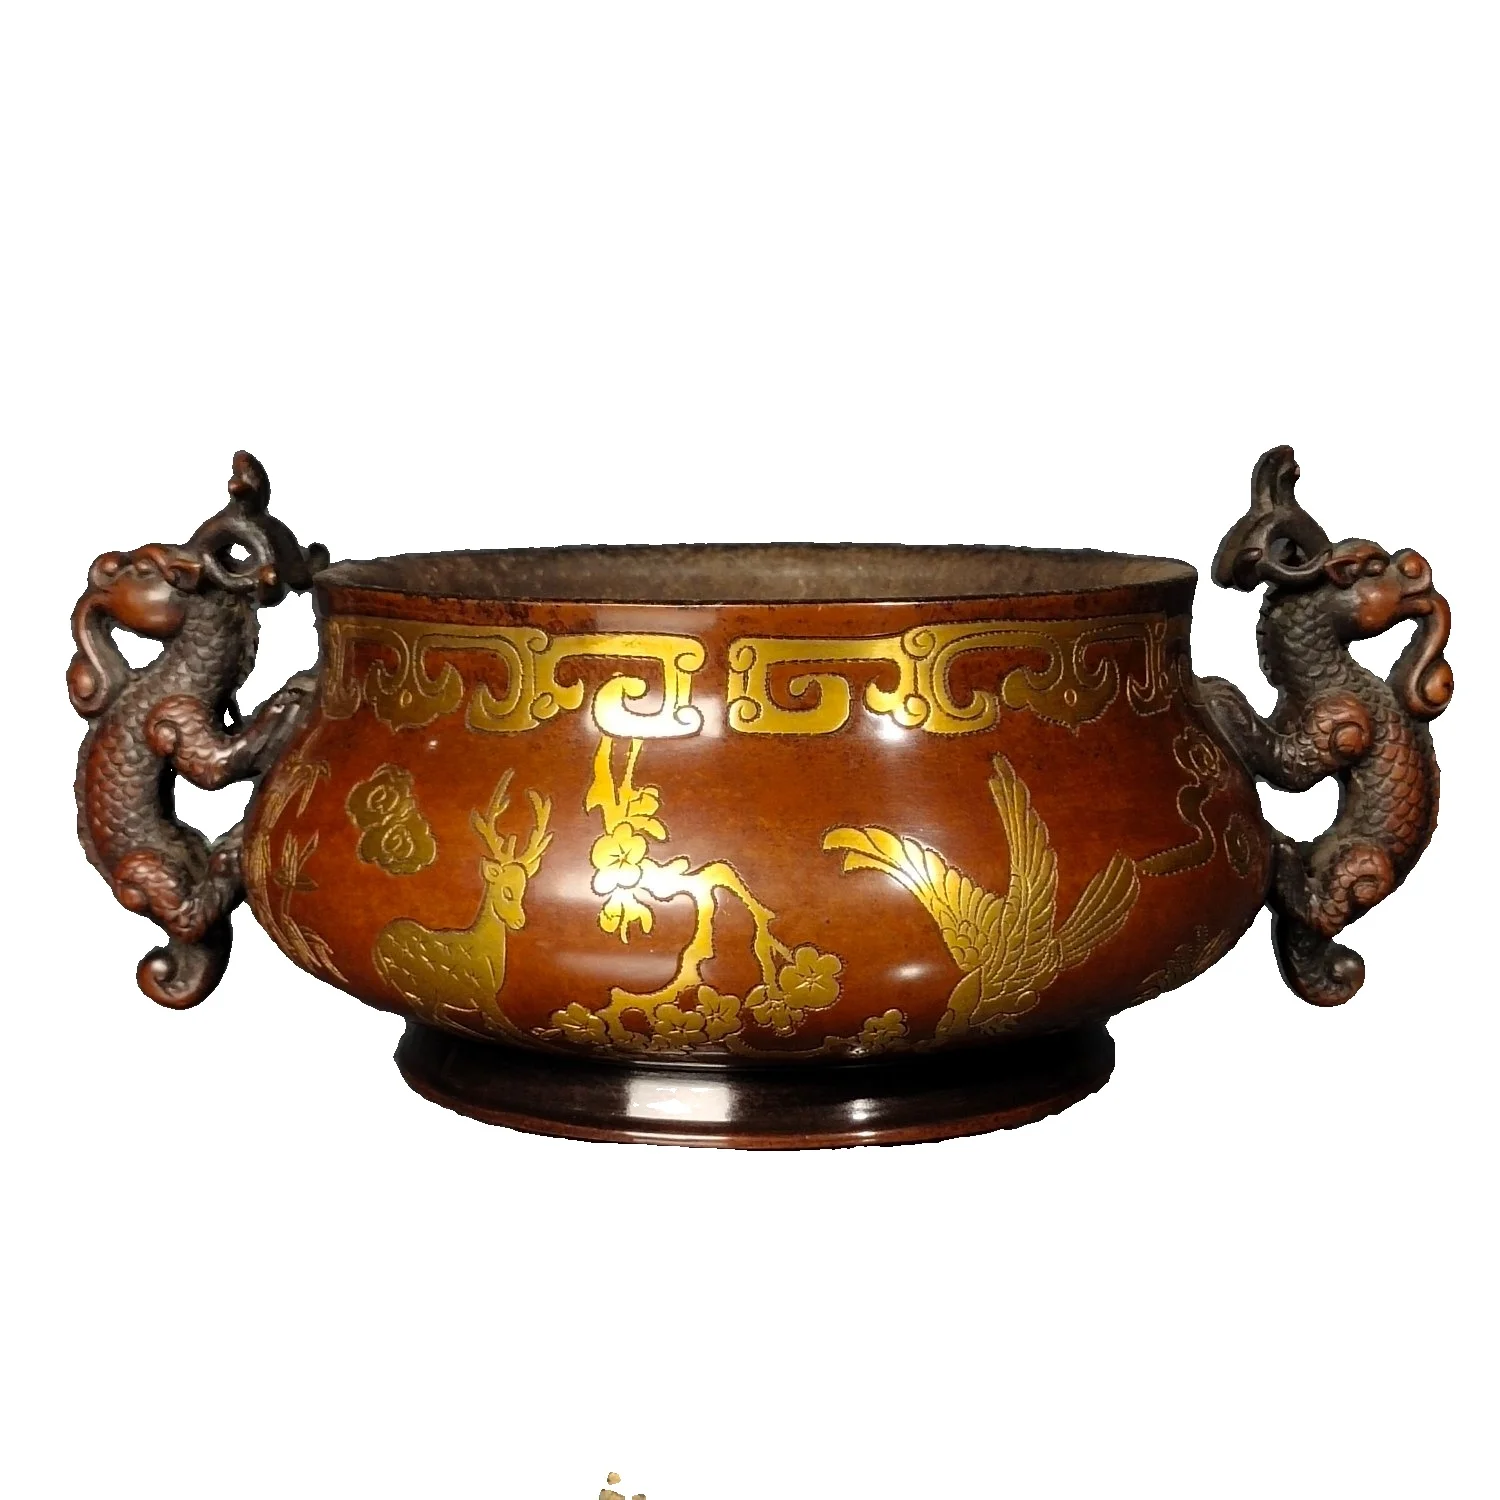 

Laojunlu горелка для благовоний из позолоченной бронзы с двойными ушками дракона, Античная бронзовая коллекция шедевров из Китая